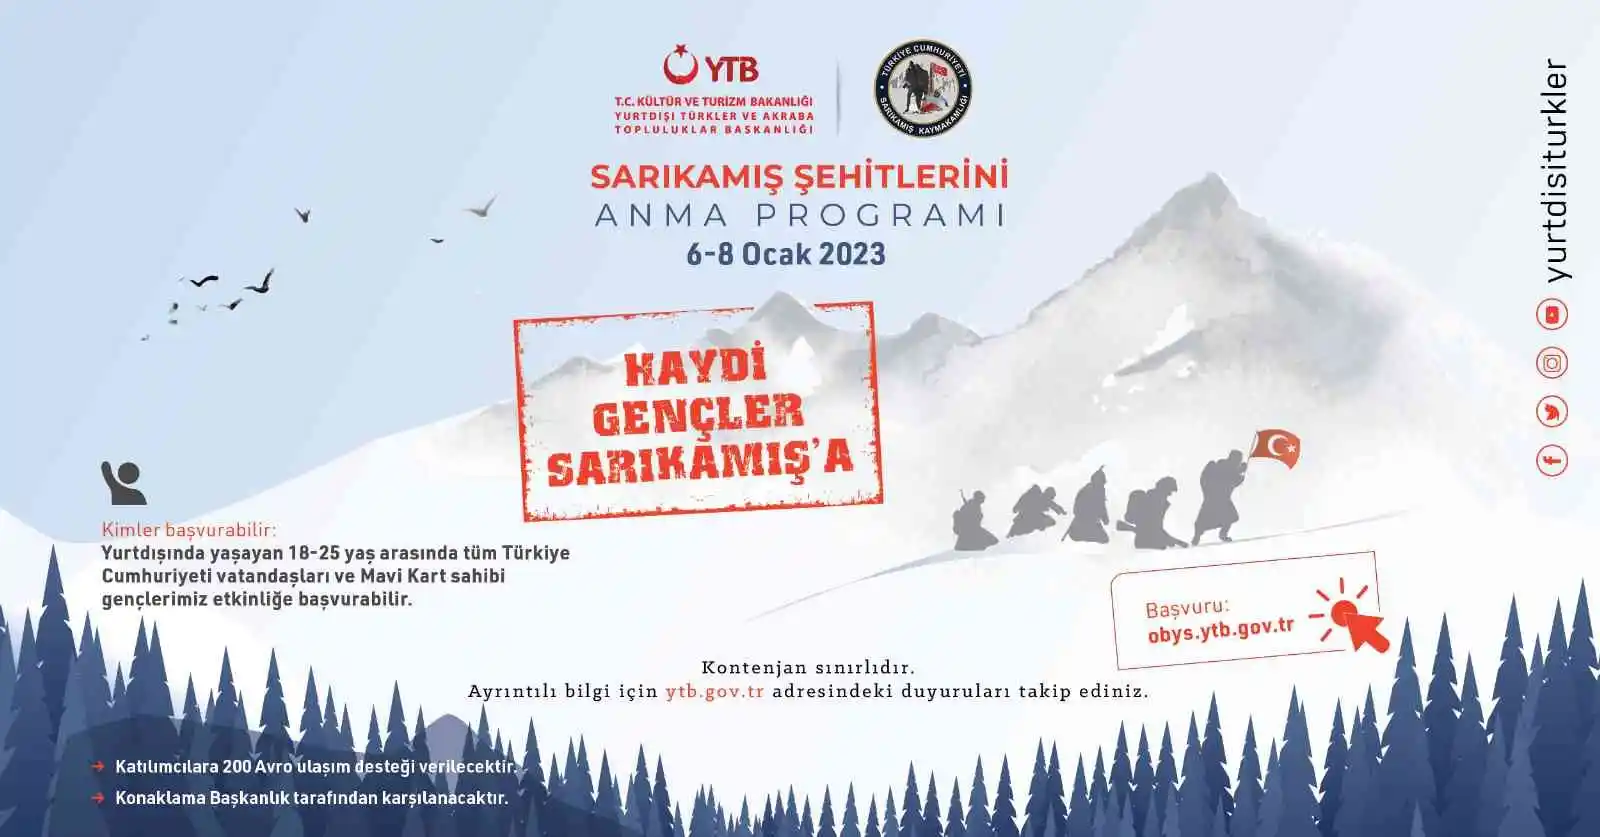 YTB, Avrupa’da yaşayan Türk gençlerini Sarıkamış şehitlerini anma programında buluşturacak
